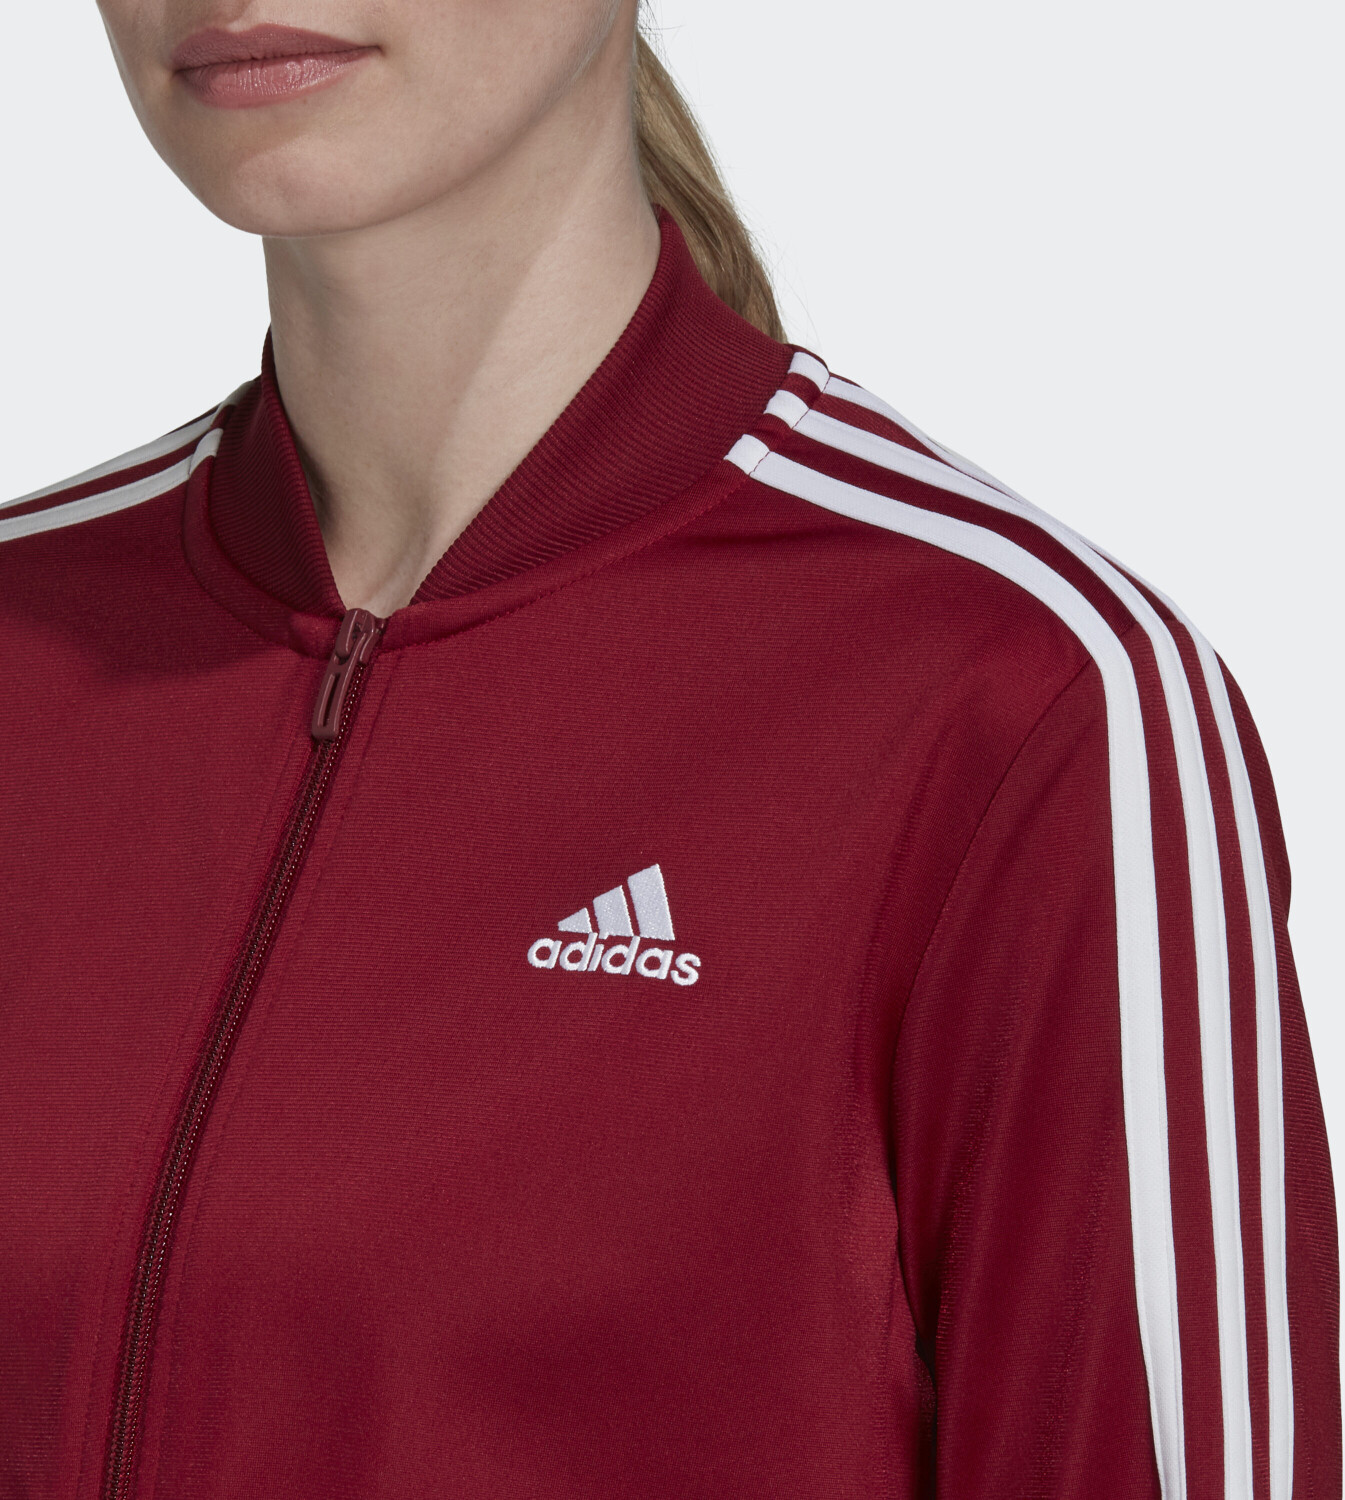 Adidas Essentials 3-Stripes Tracksuit legend 45,59 | bei Women ink/collegiate ab burgundy € Preisvergleich